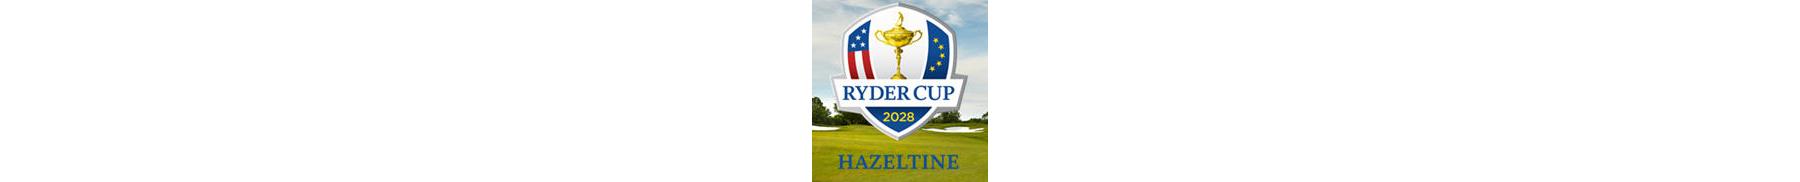 Ryder Cup 2028 logocropmod